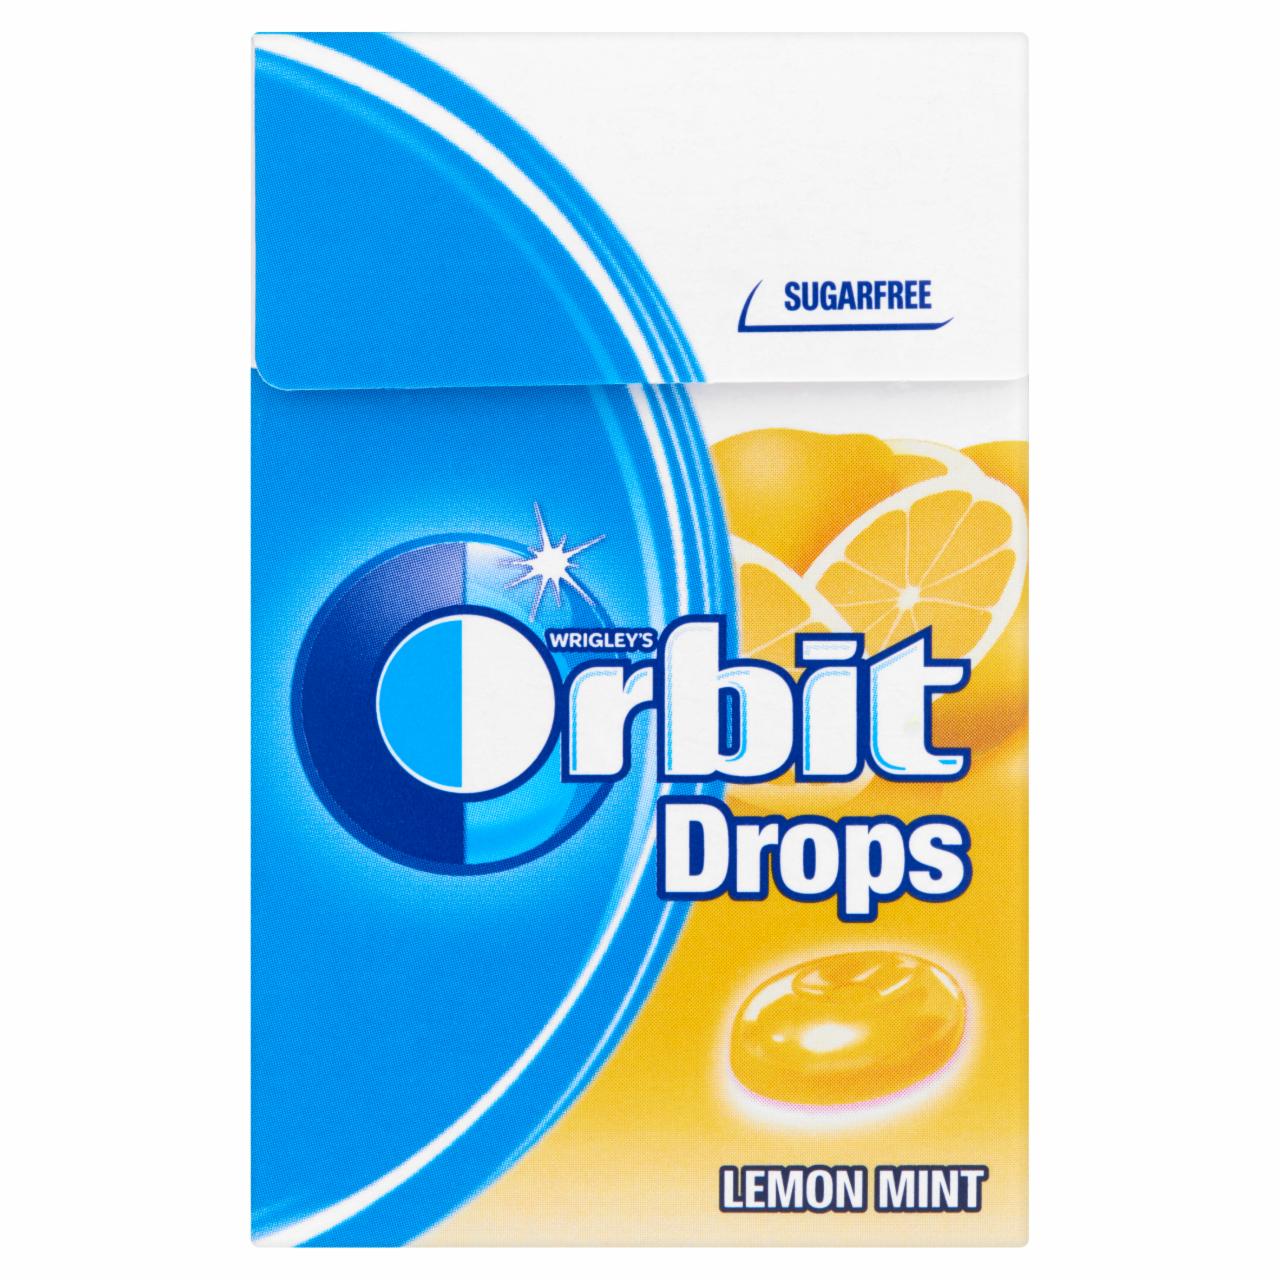 Képek - Orbit Drops Lemon Mint cukormentes cukorka édesítőszerrel 33 g